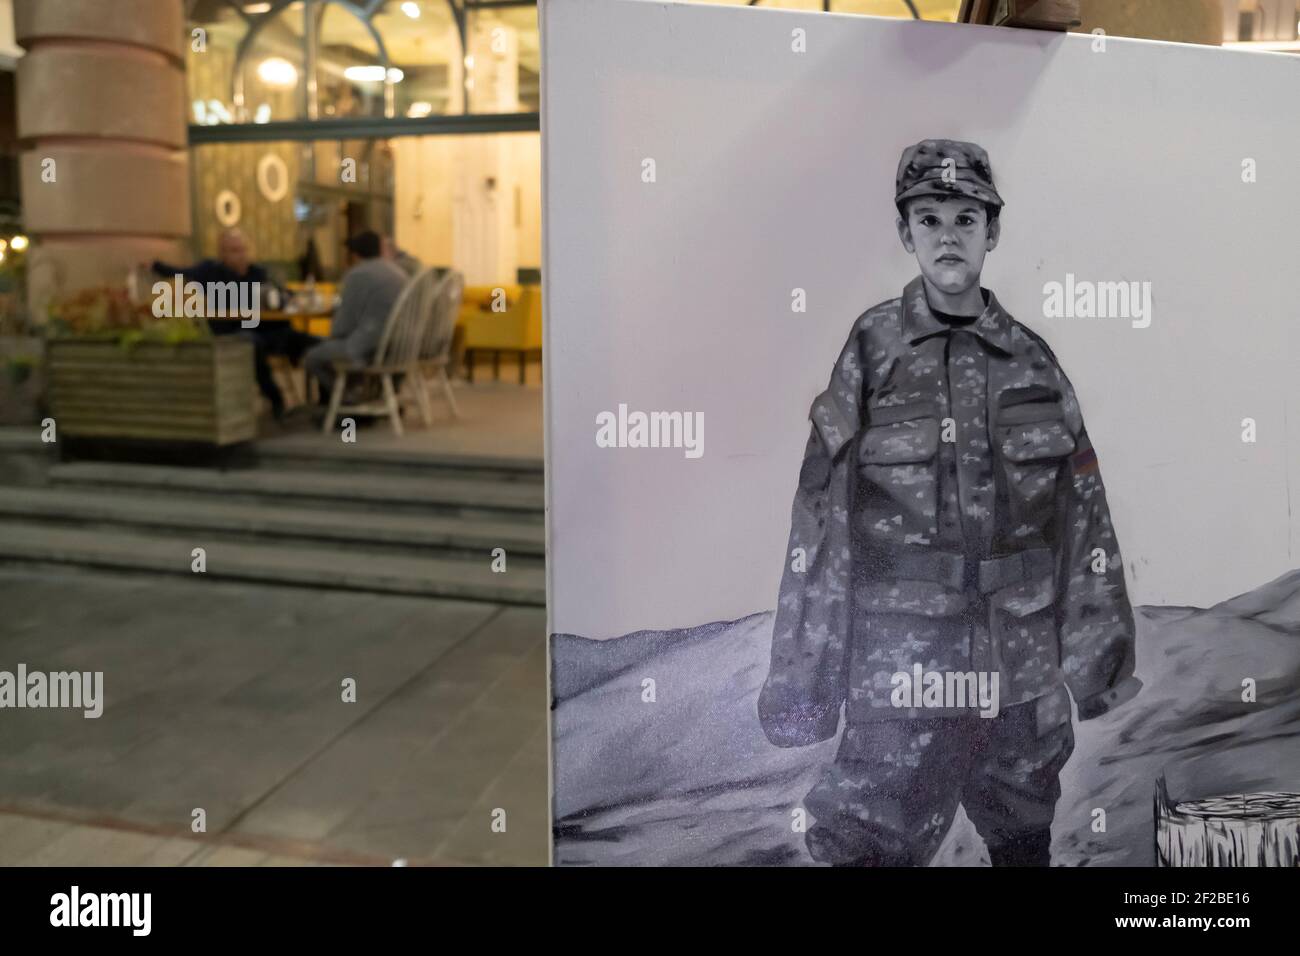 EREVAN, ARMÉNIE - OCTOBRE 30 : un tableau montre un enfant en fatigue militaire près d'un restaurant lors d'un conflit militaire entre les forces arméniennes et azerbaïdjanaises sur l'avenue du Nord, dans la capitale arménienne d'Erevan, le 30 2020 octobre. Les combats entre l'Arménie et l'Azerbaïdjan sur le Haut-Karabakh, également connu sous le nom de République d'Artsakh, ont rééclaté à la fin de septembre pour se transformer en une guerre de six semaines avec les deux pays s'accusant mutuellement de provocation qui a fait des milliers de morts. Banque D'Images